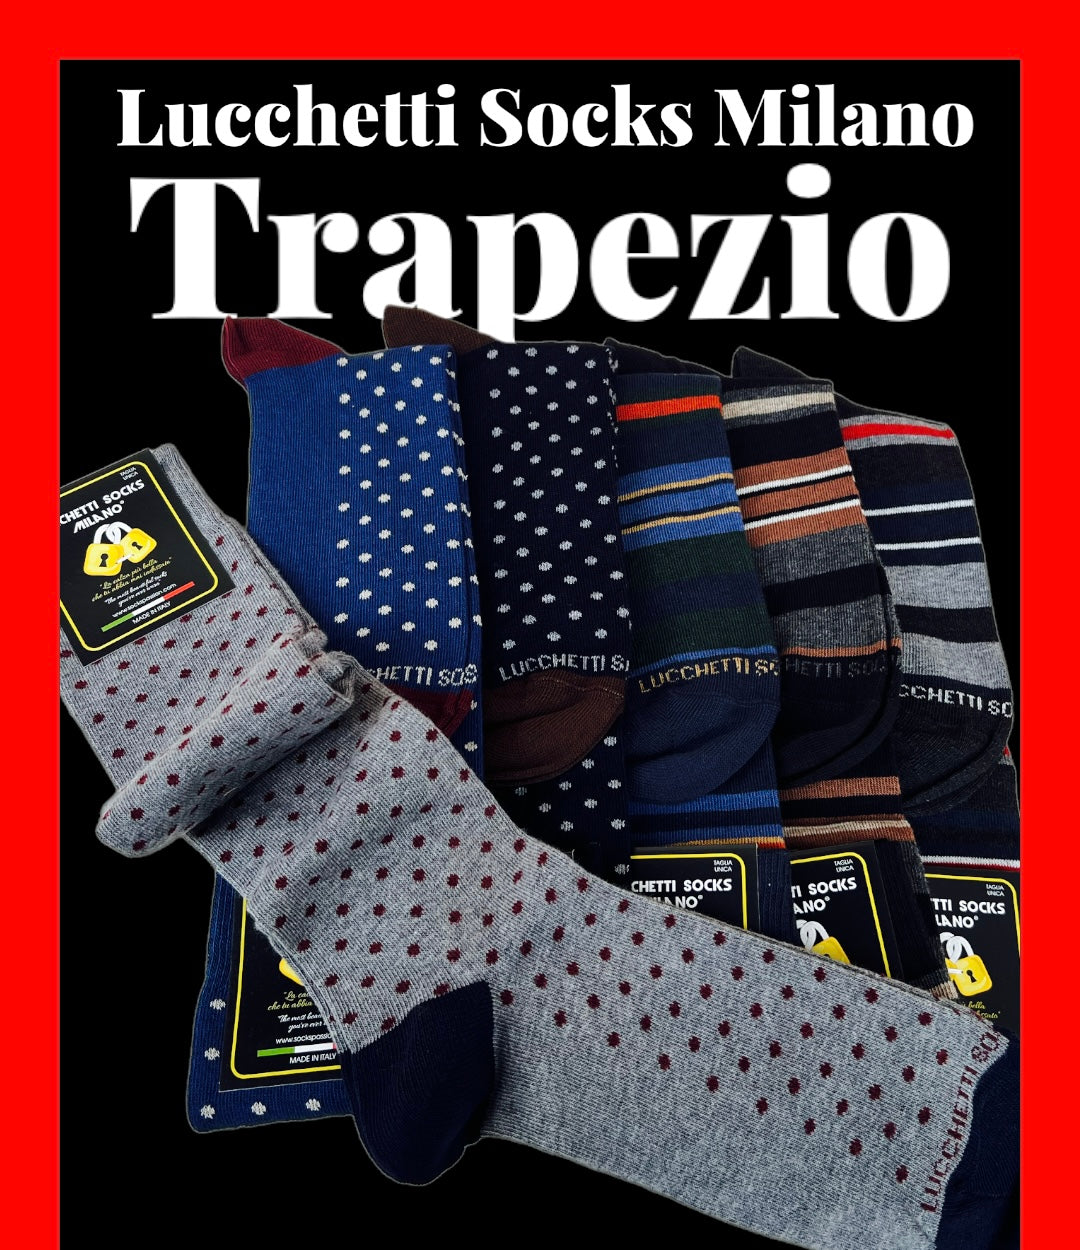 6 Paia di calze uomo lunghe caldo cotone colorate tendenza pois fantasia fashion Made in Italy Set Trapezio